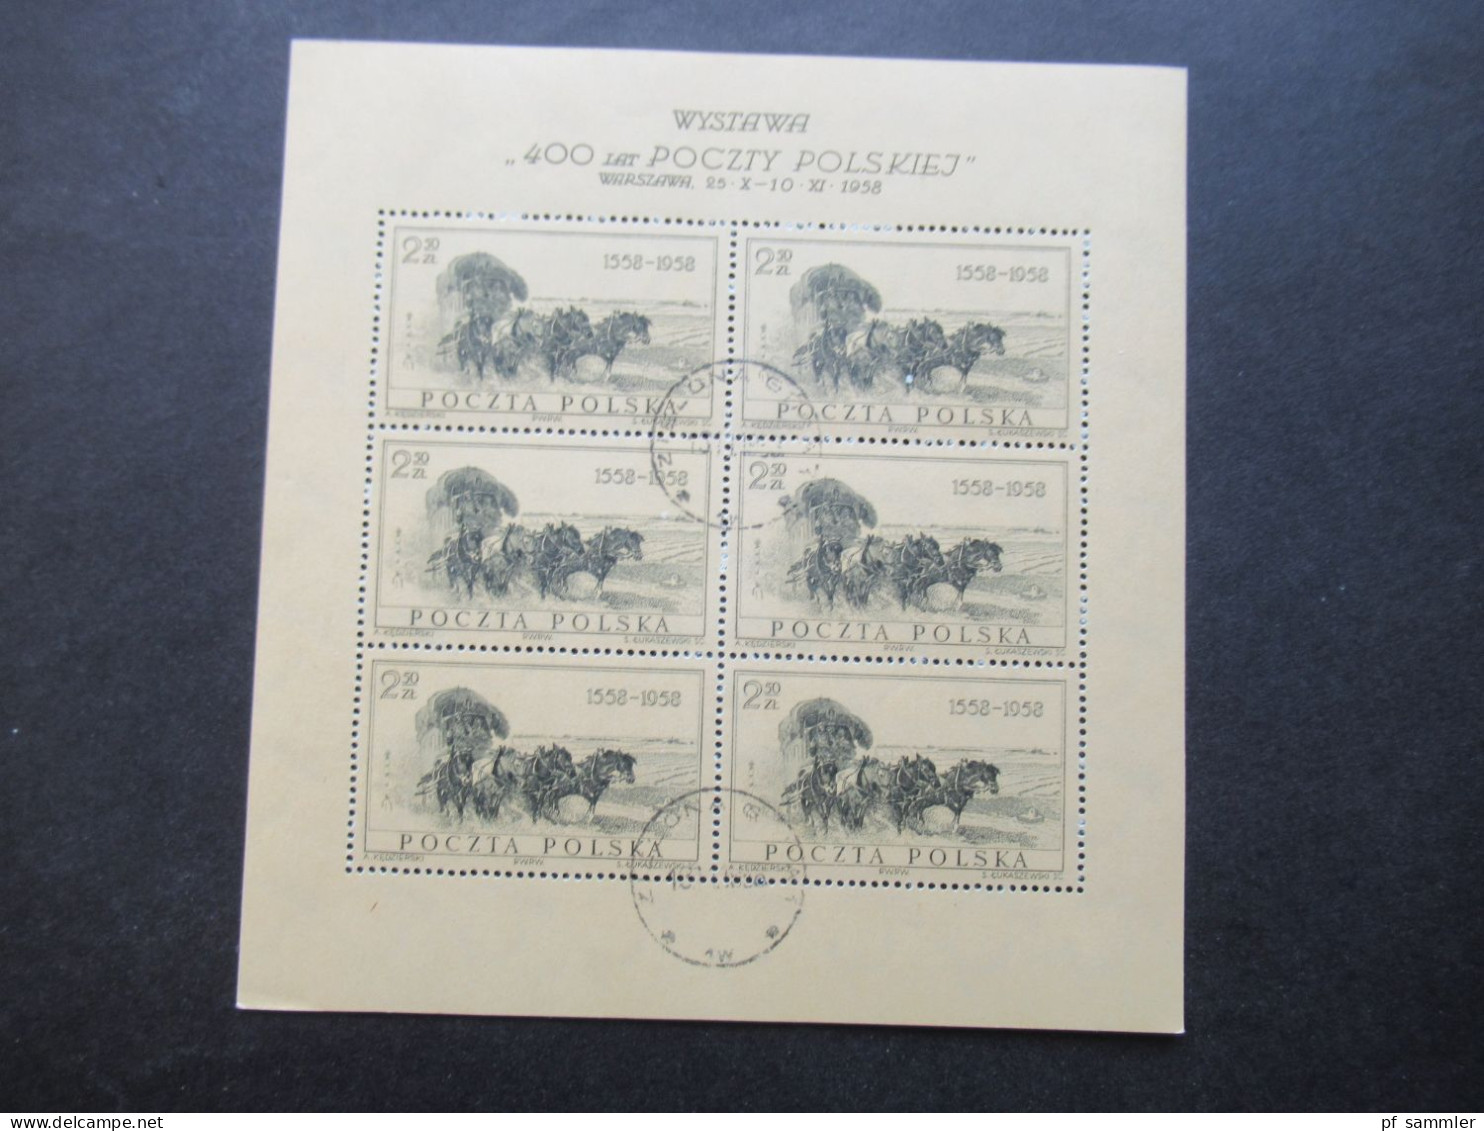 Polen 1960 1x Nr.1177 Briefmarkenausstellung Polska Kleinbogen gest. Opole und 12x Kleinbogen I Nr.1072 aus 1958 gestemp